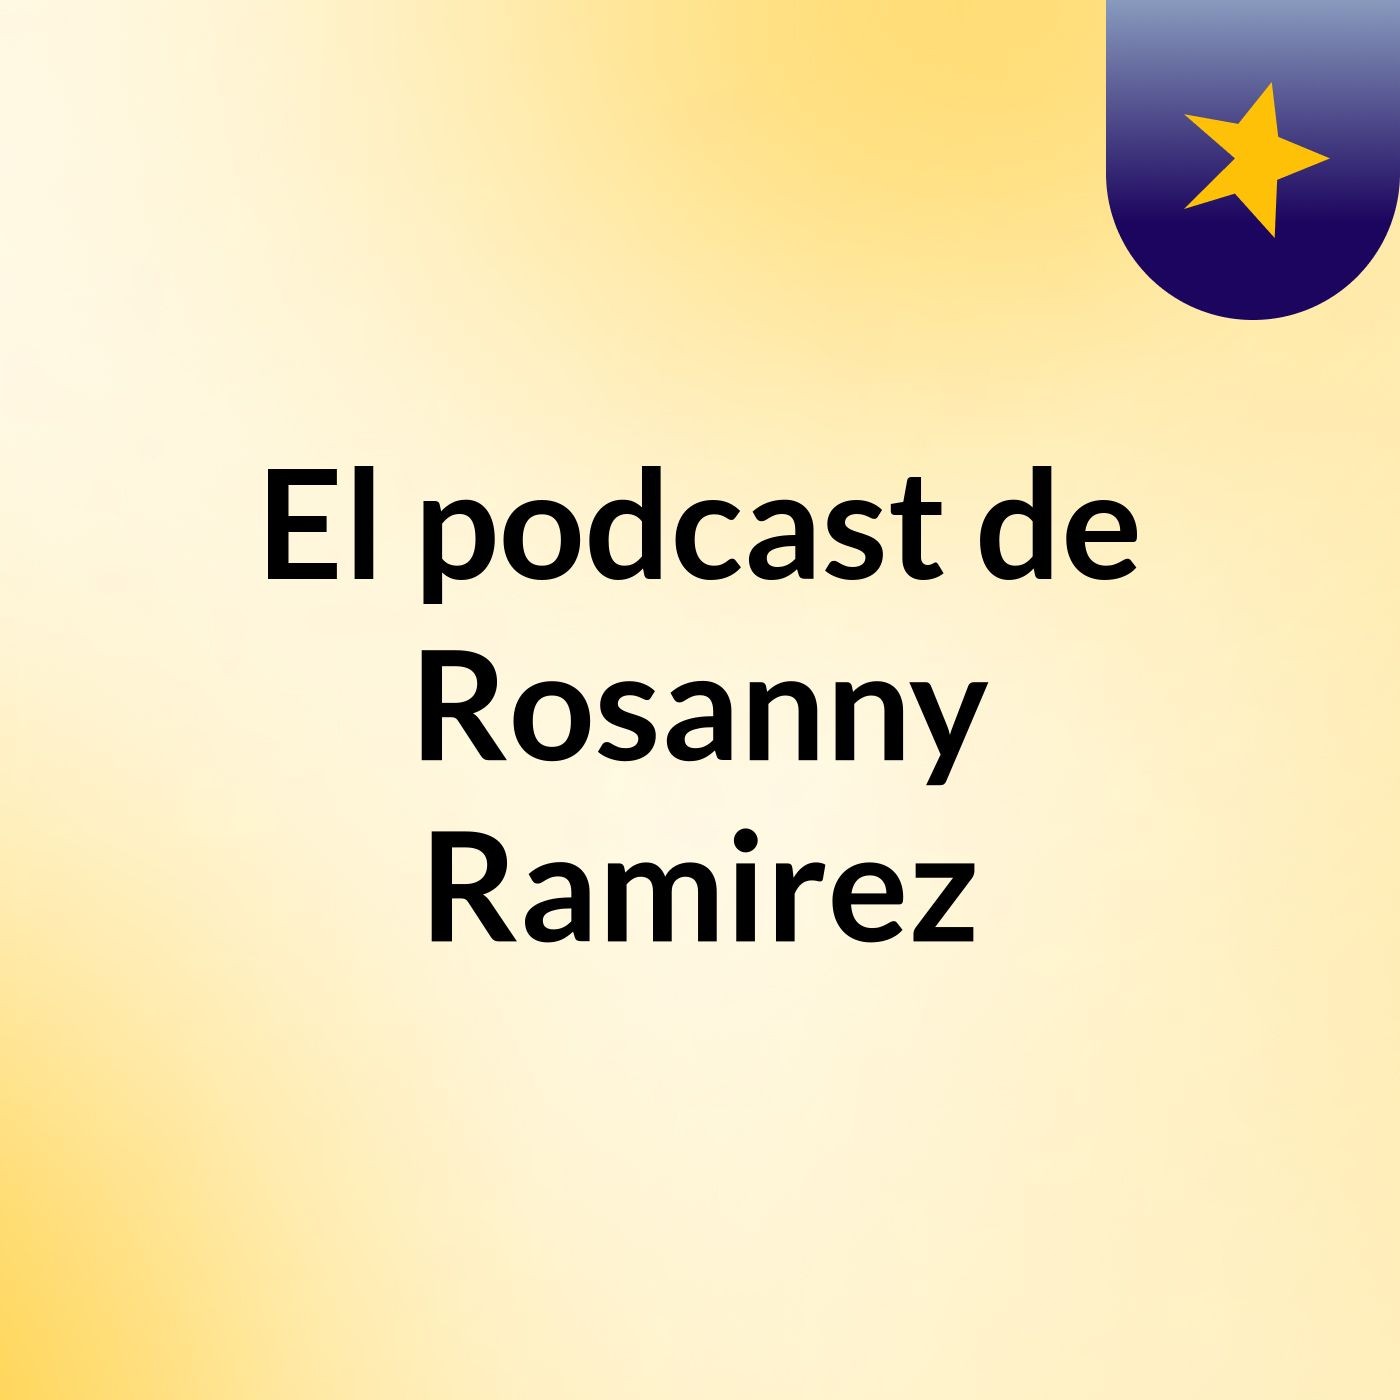 El podcast de Rosanny Ramirez